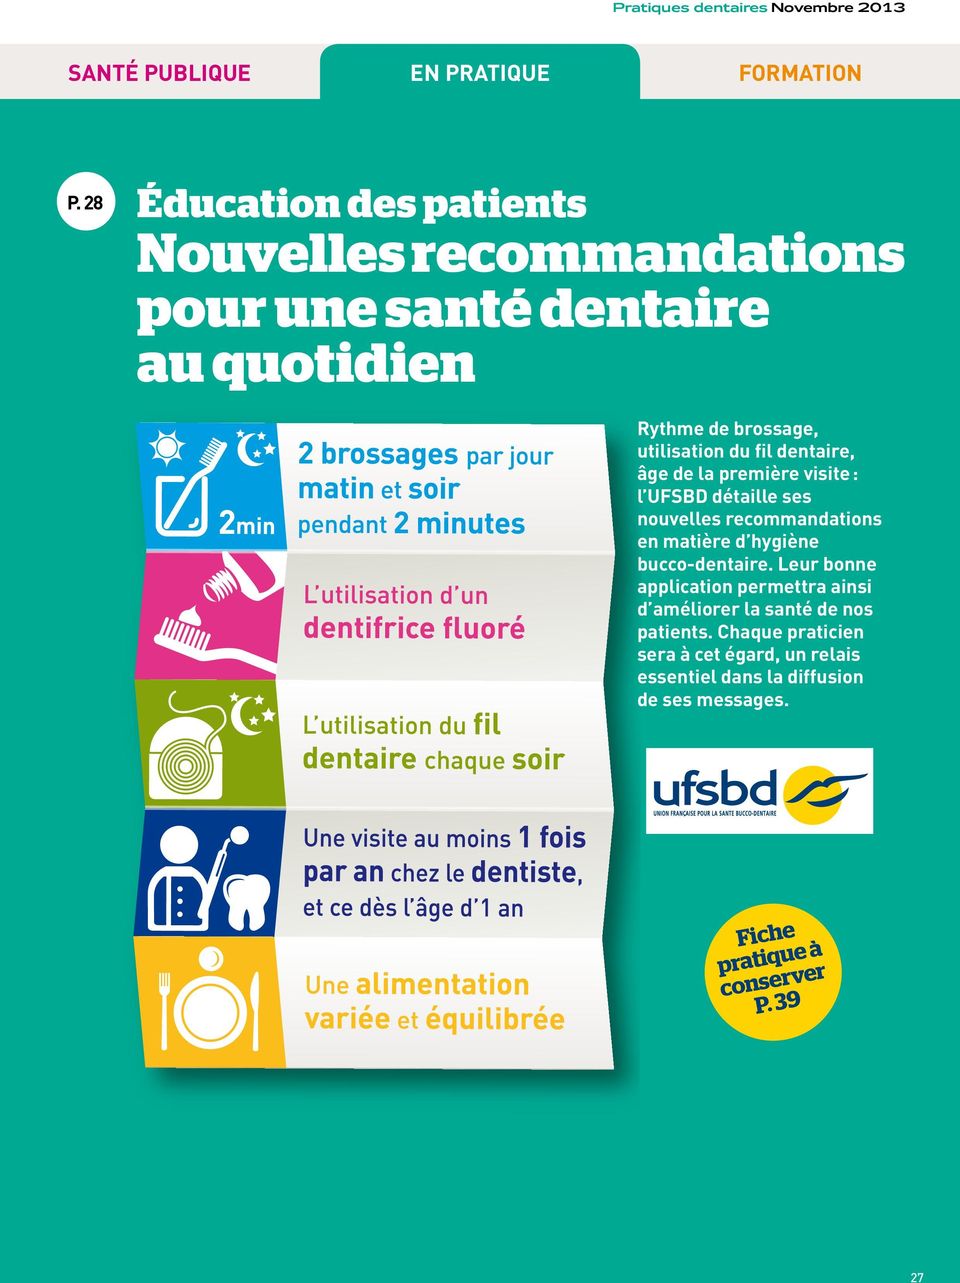 dentaire, âge de la première visite : l UFSBD détaille ses nouvelles recommandations en matière d hygiène bucco-dentaire.